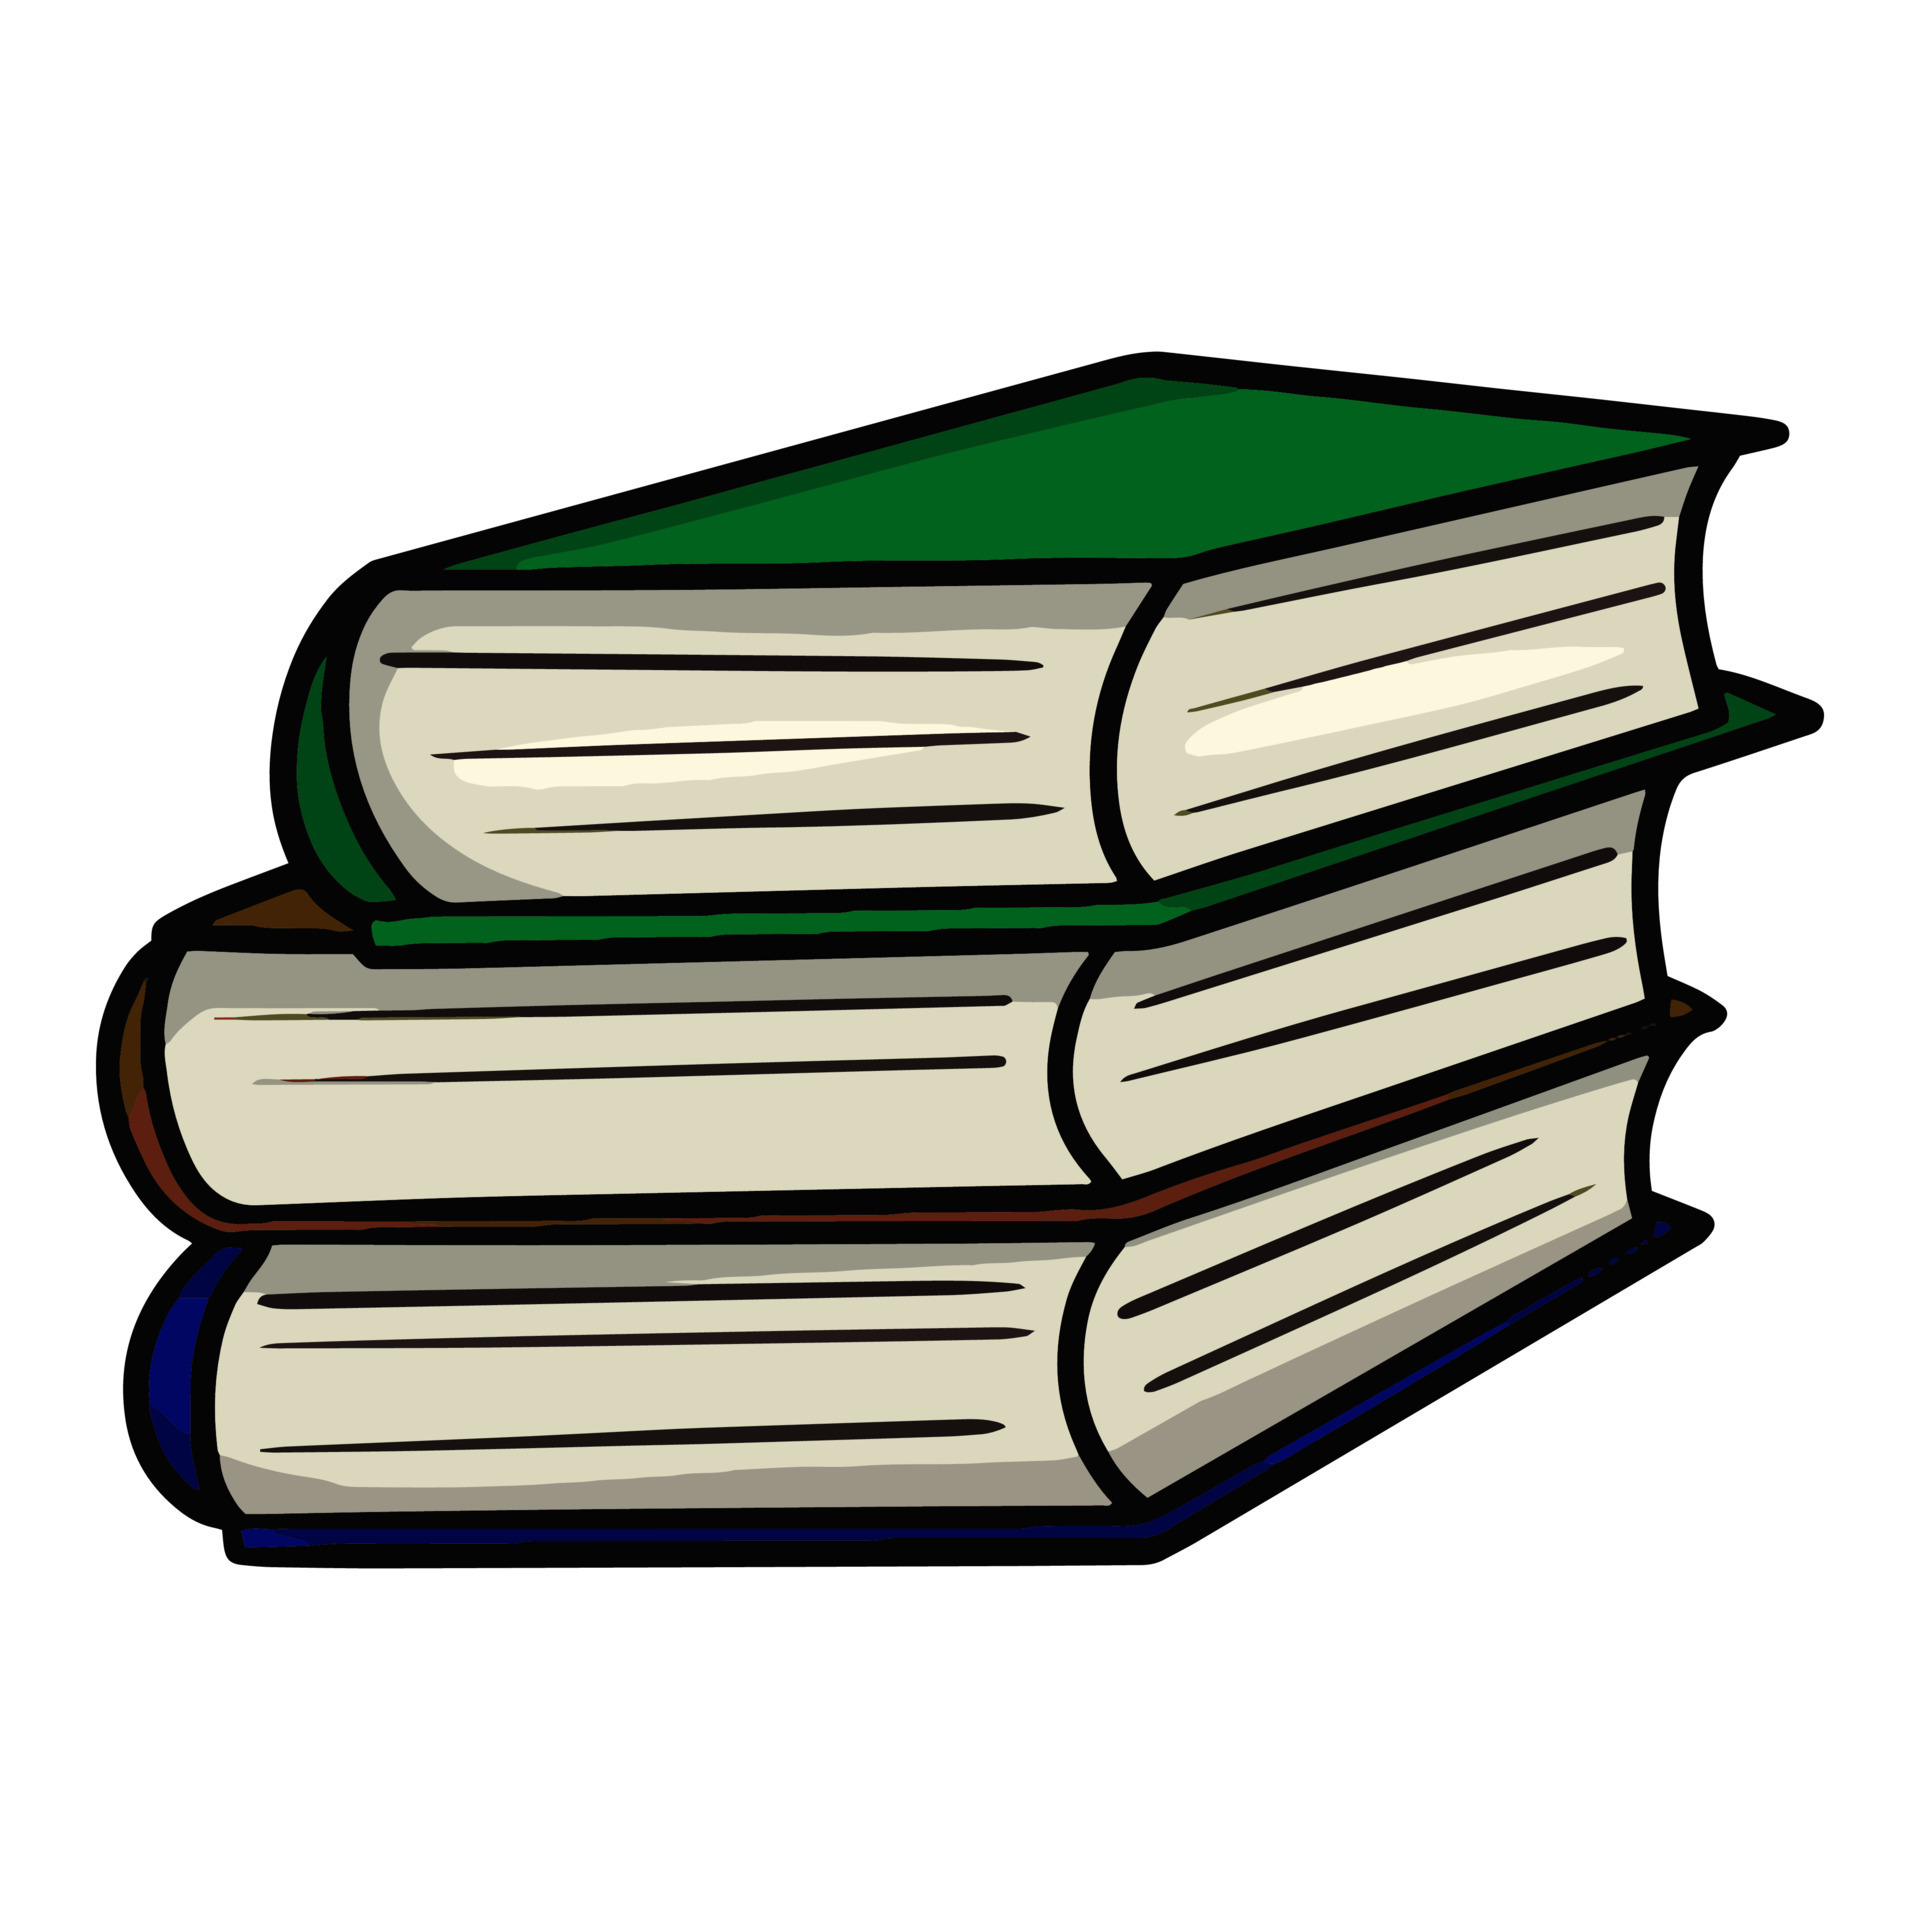 une petite pile de livres épais fermés, livres de bibliothèque,  illustration vectorielle sur fond blanc 7517454 Art vectoriel chez Vecteezy